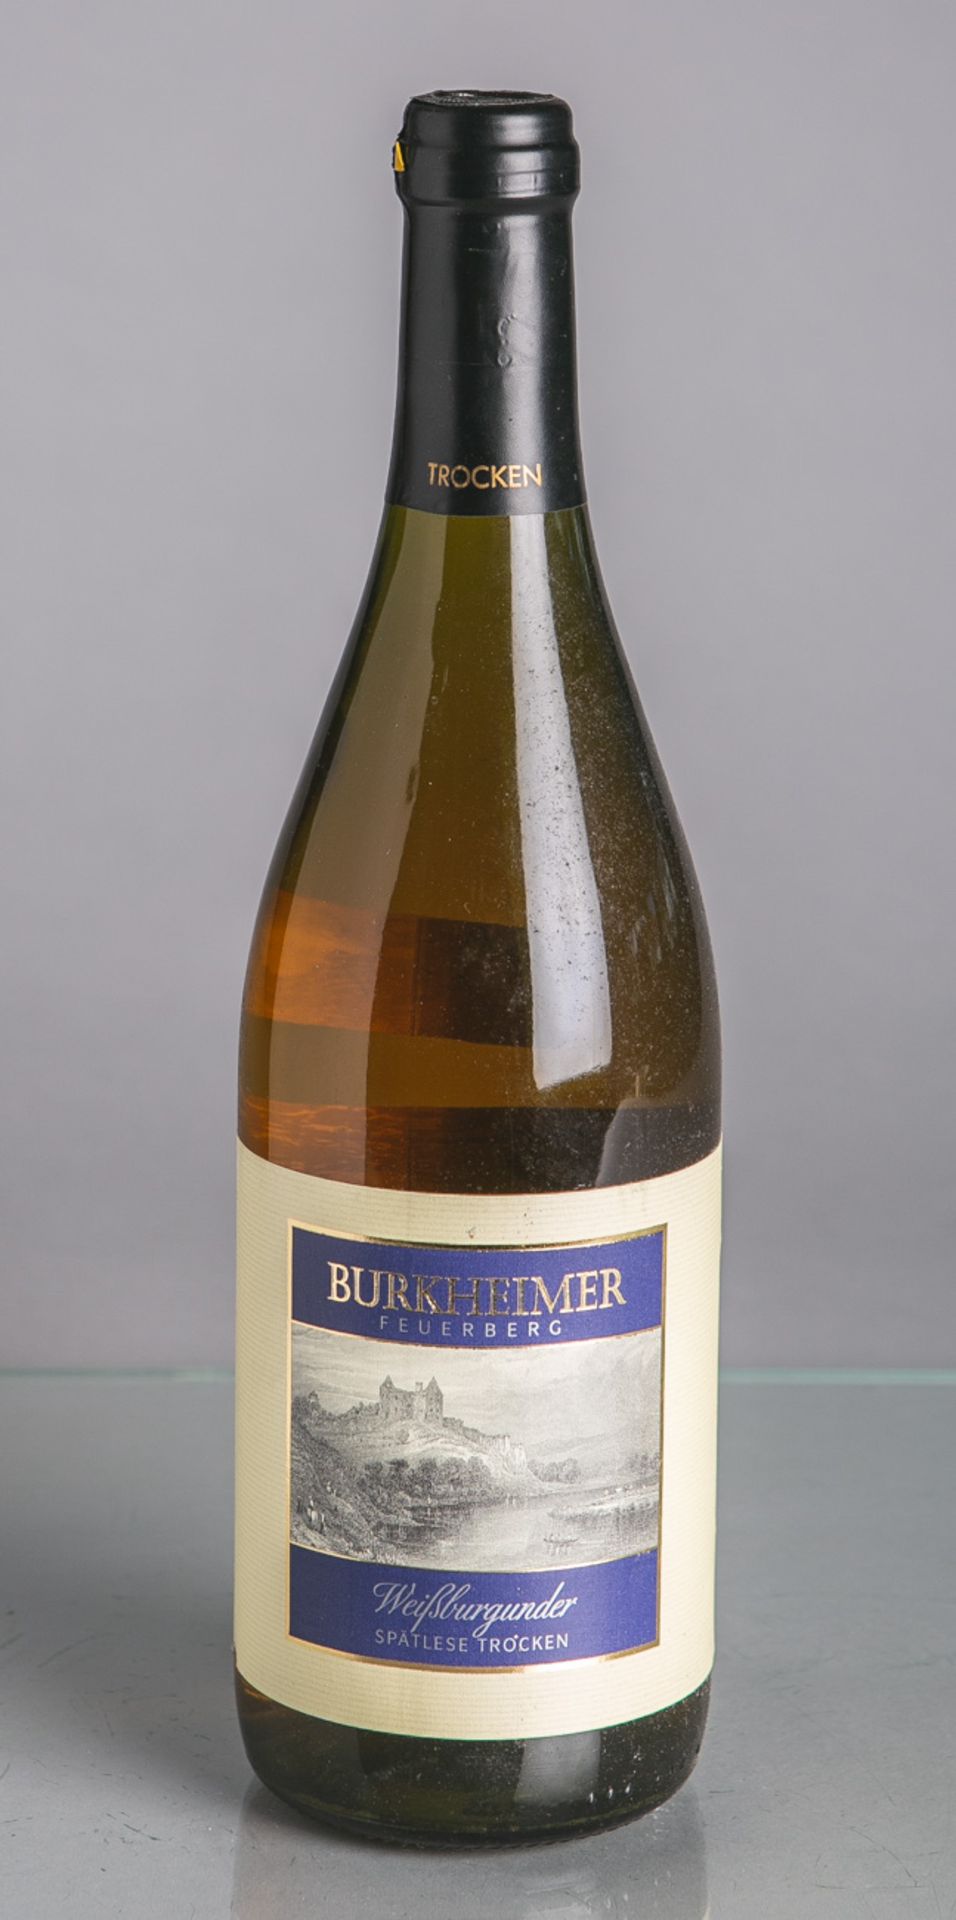 13 Flaschen von Burkheimer, Feuerberg (2001) - Bild 2 aus 2